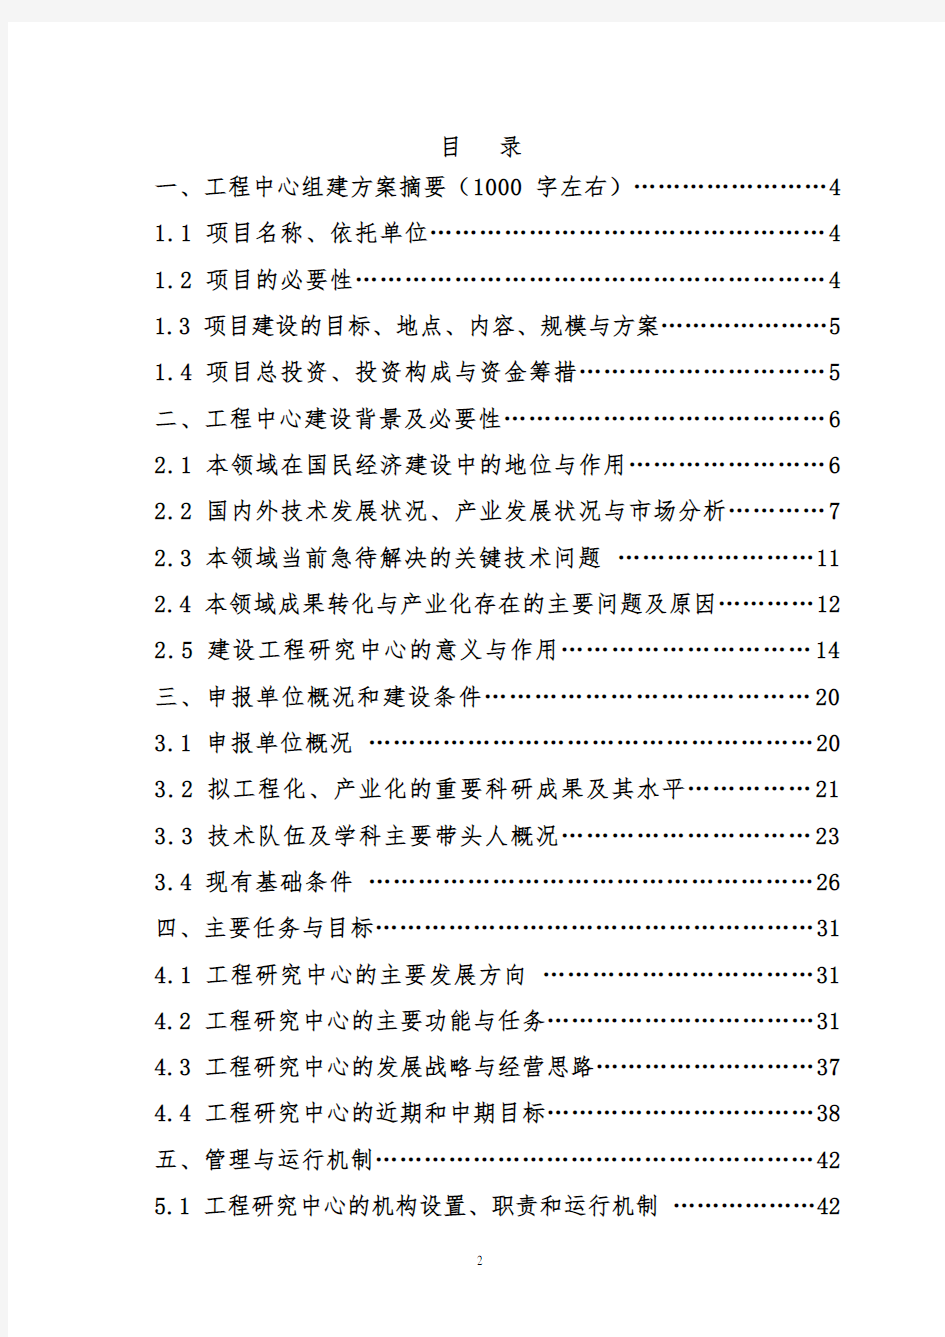 河南省工程研究中心组建方案可行性报告